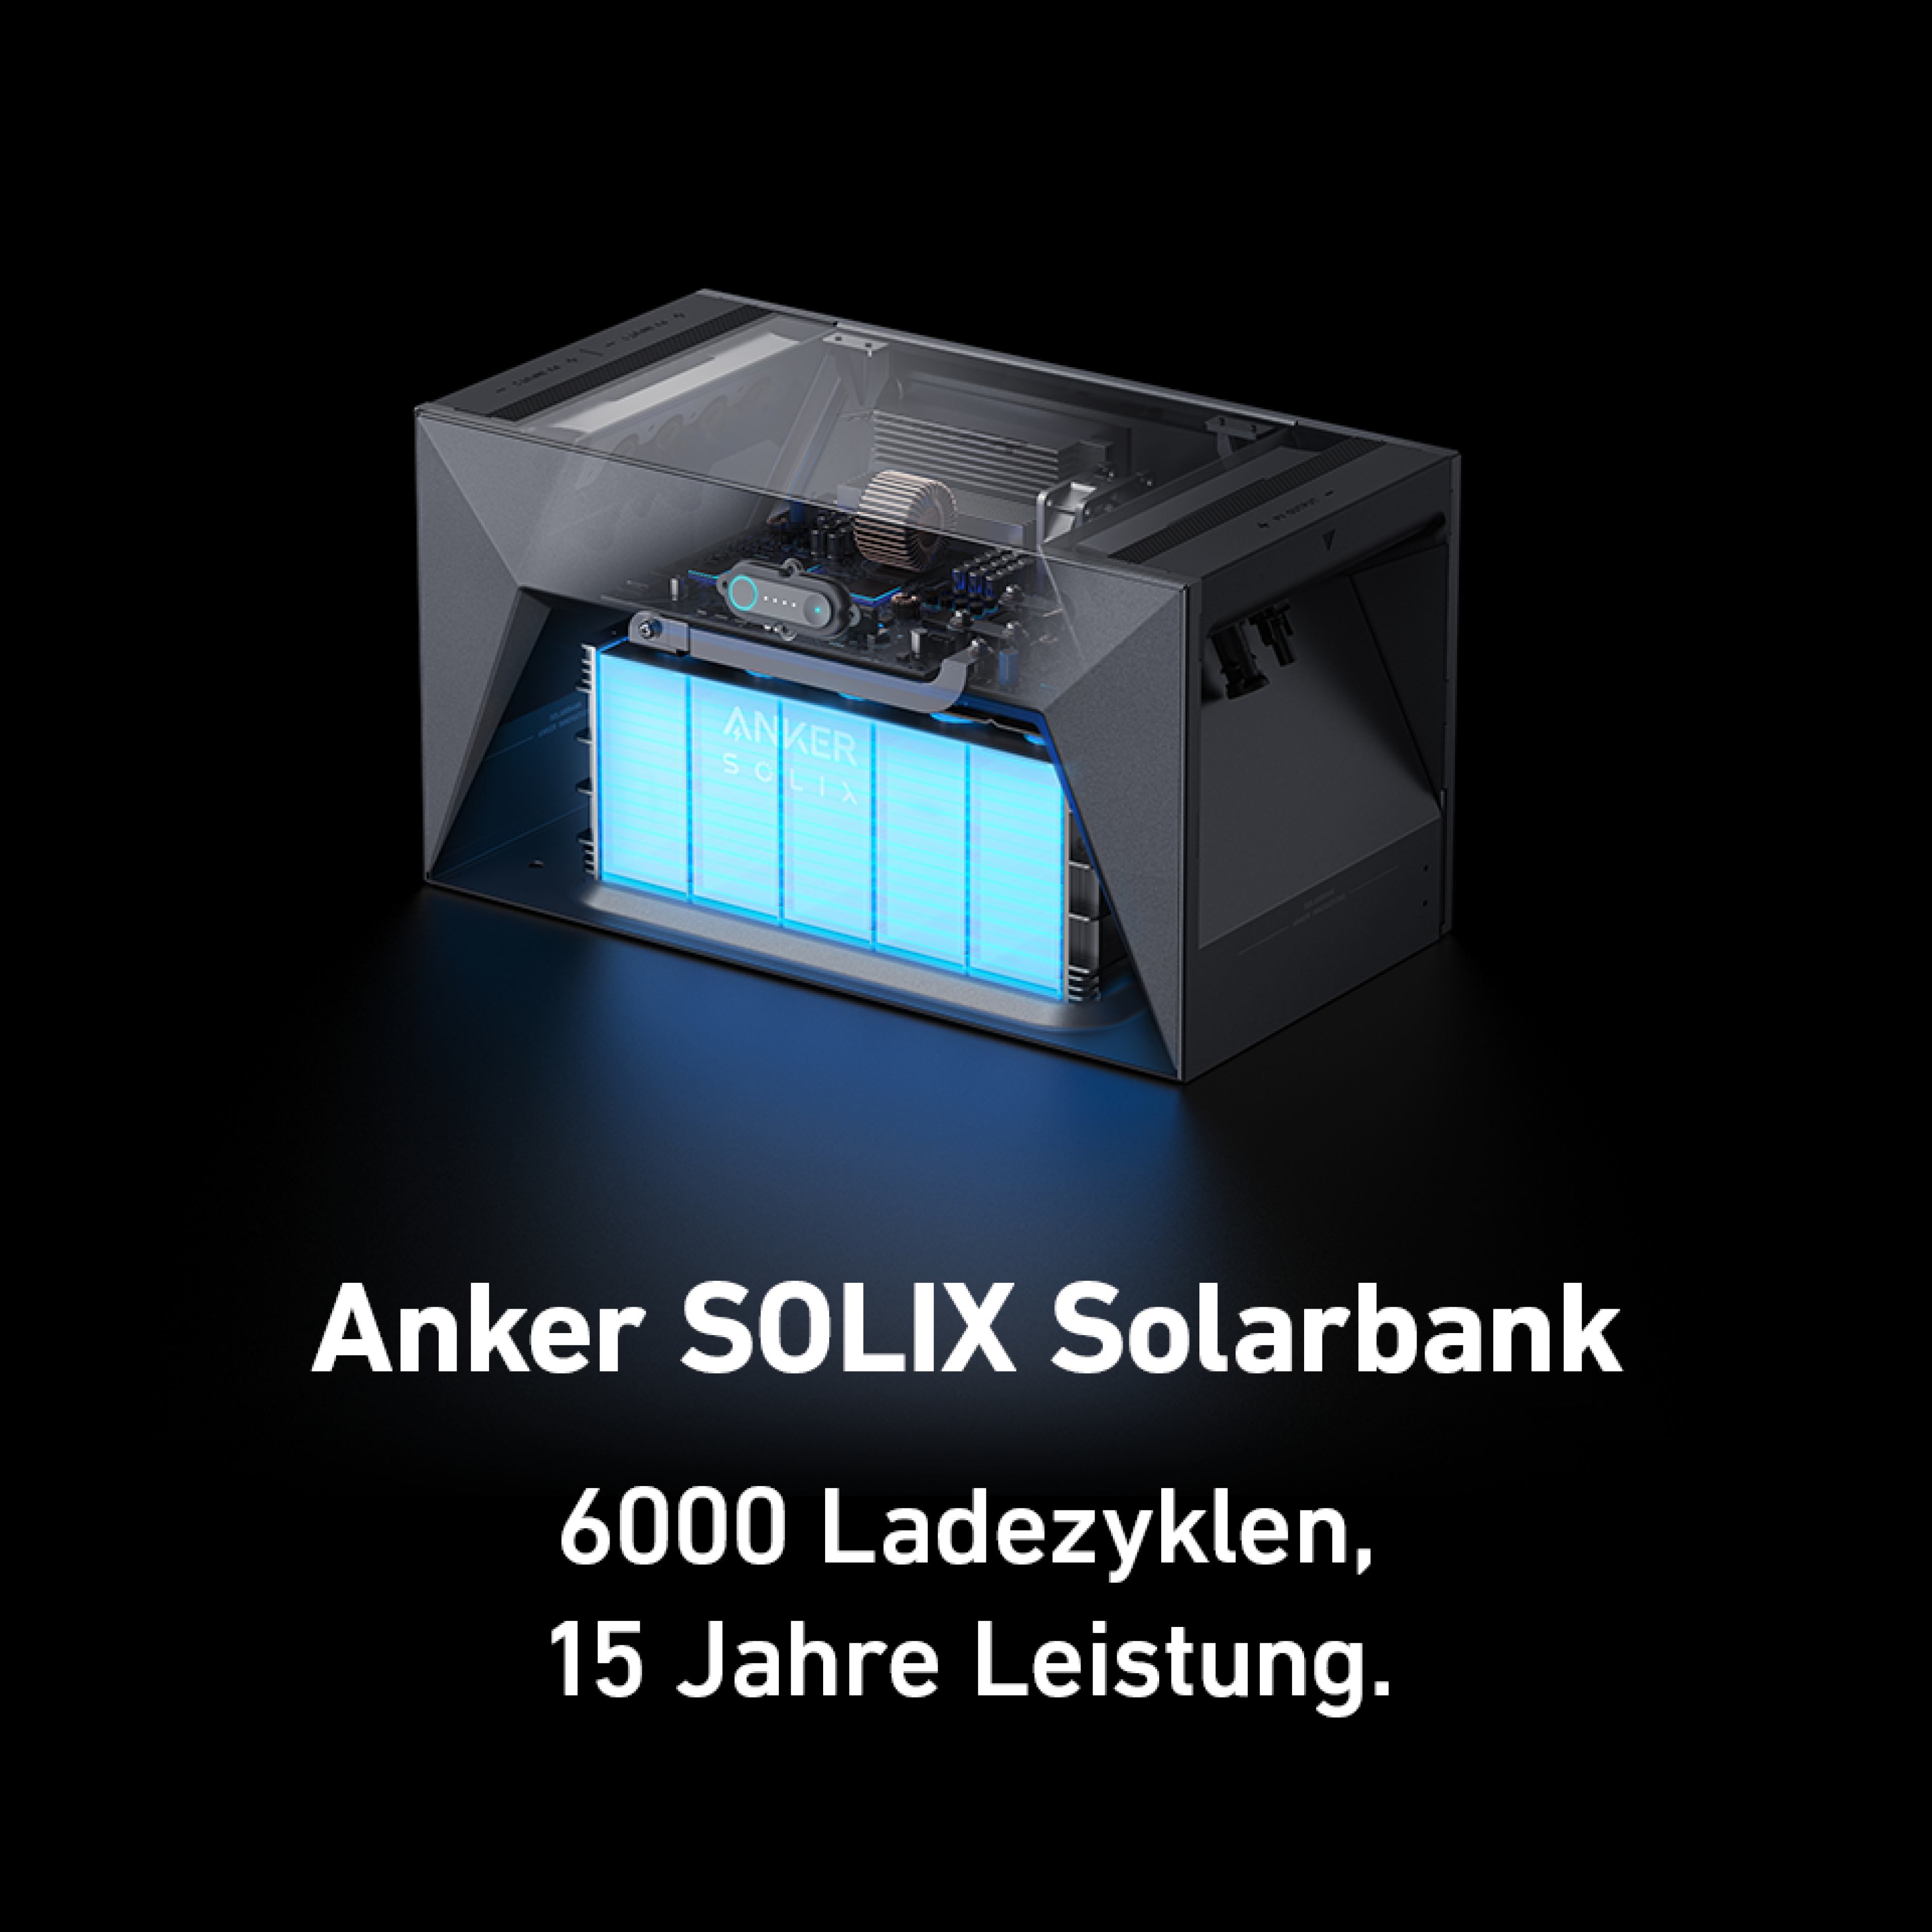 Anker SOLIX Solarbank E1600+17Y0 Speicher für Balkonkraftwerke